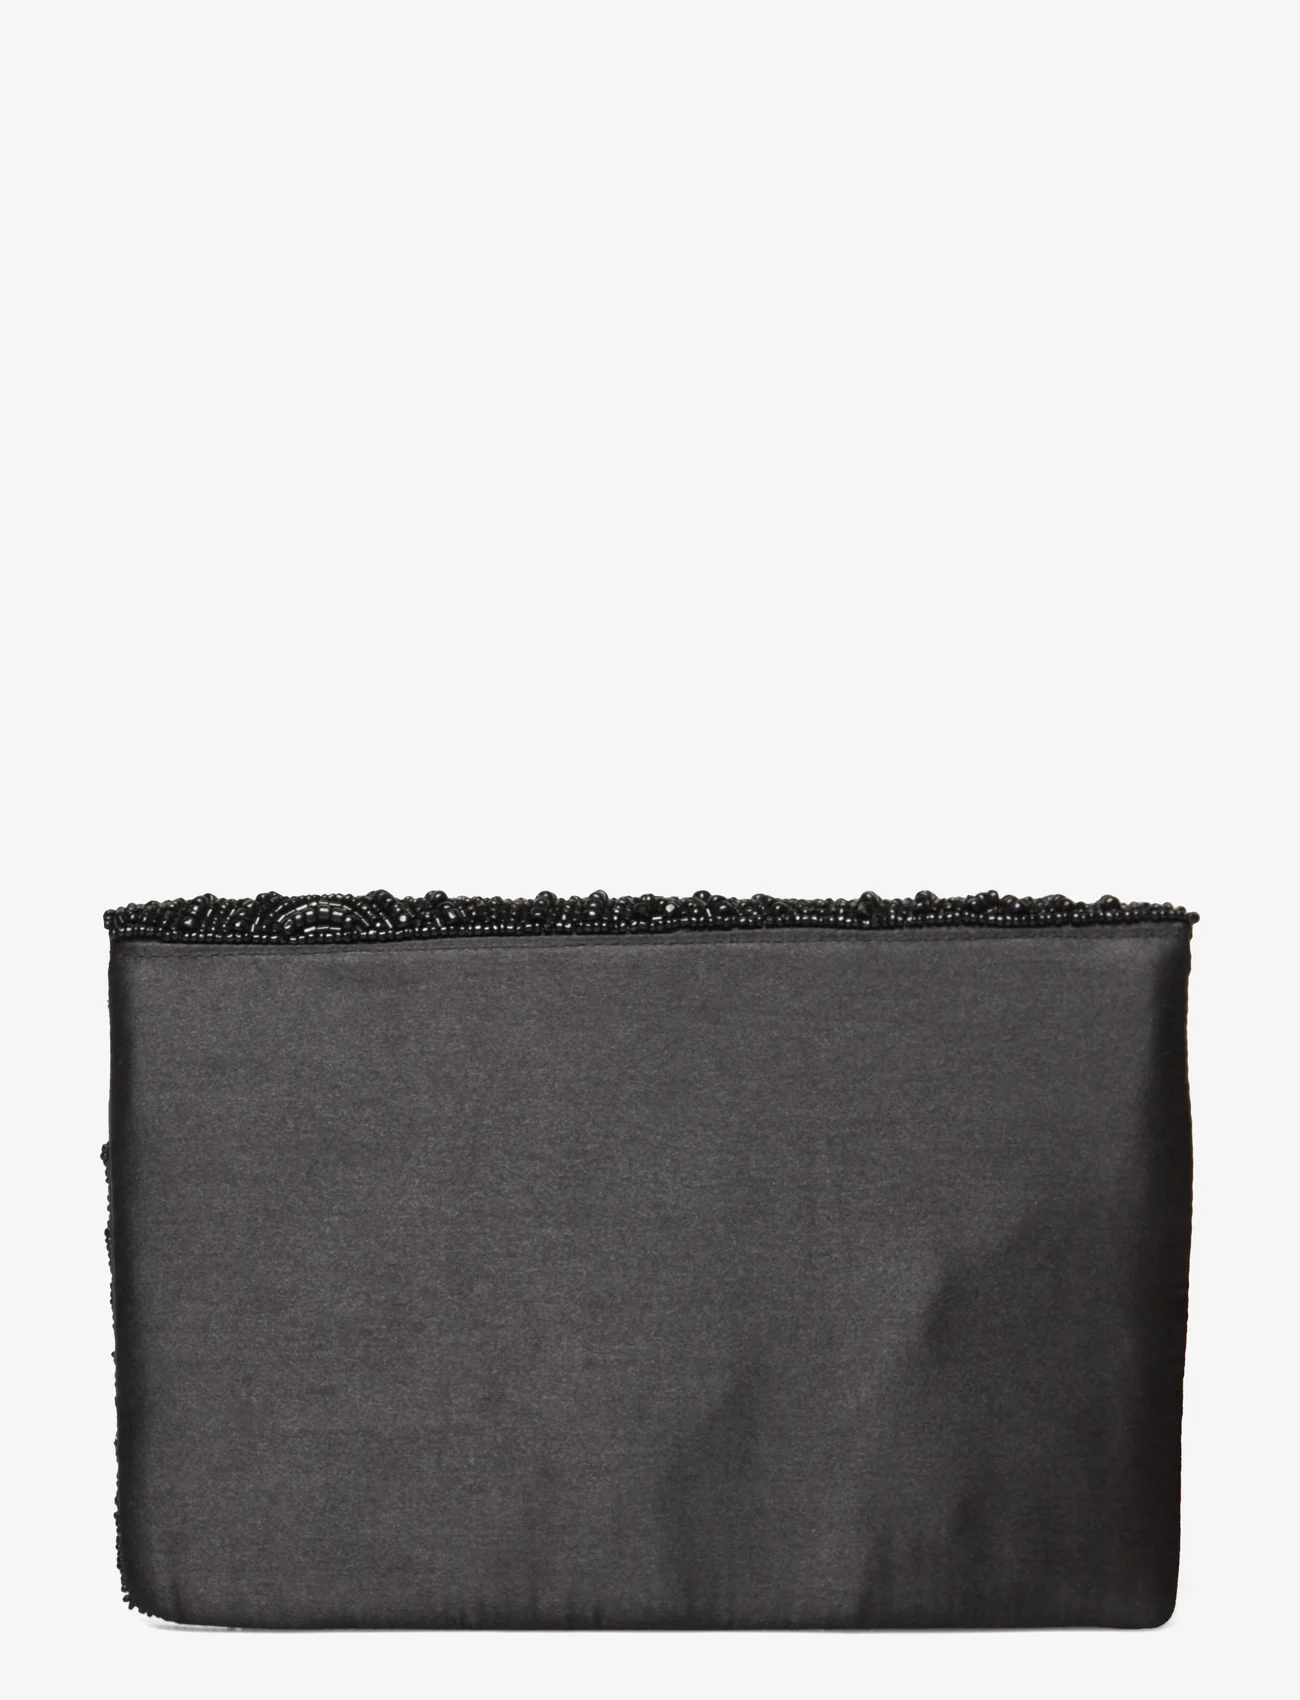 Pipol's Bazaar - Casablanca Black Clutch Bag - odzież imprezowa w cenach outletowych - multi - 1